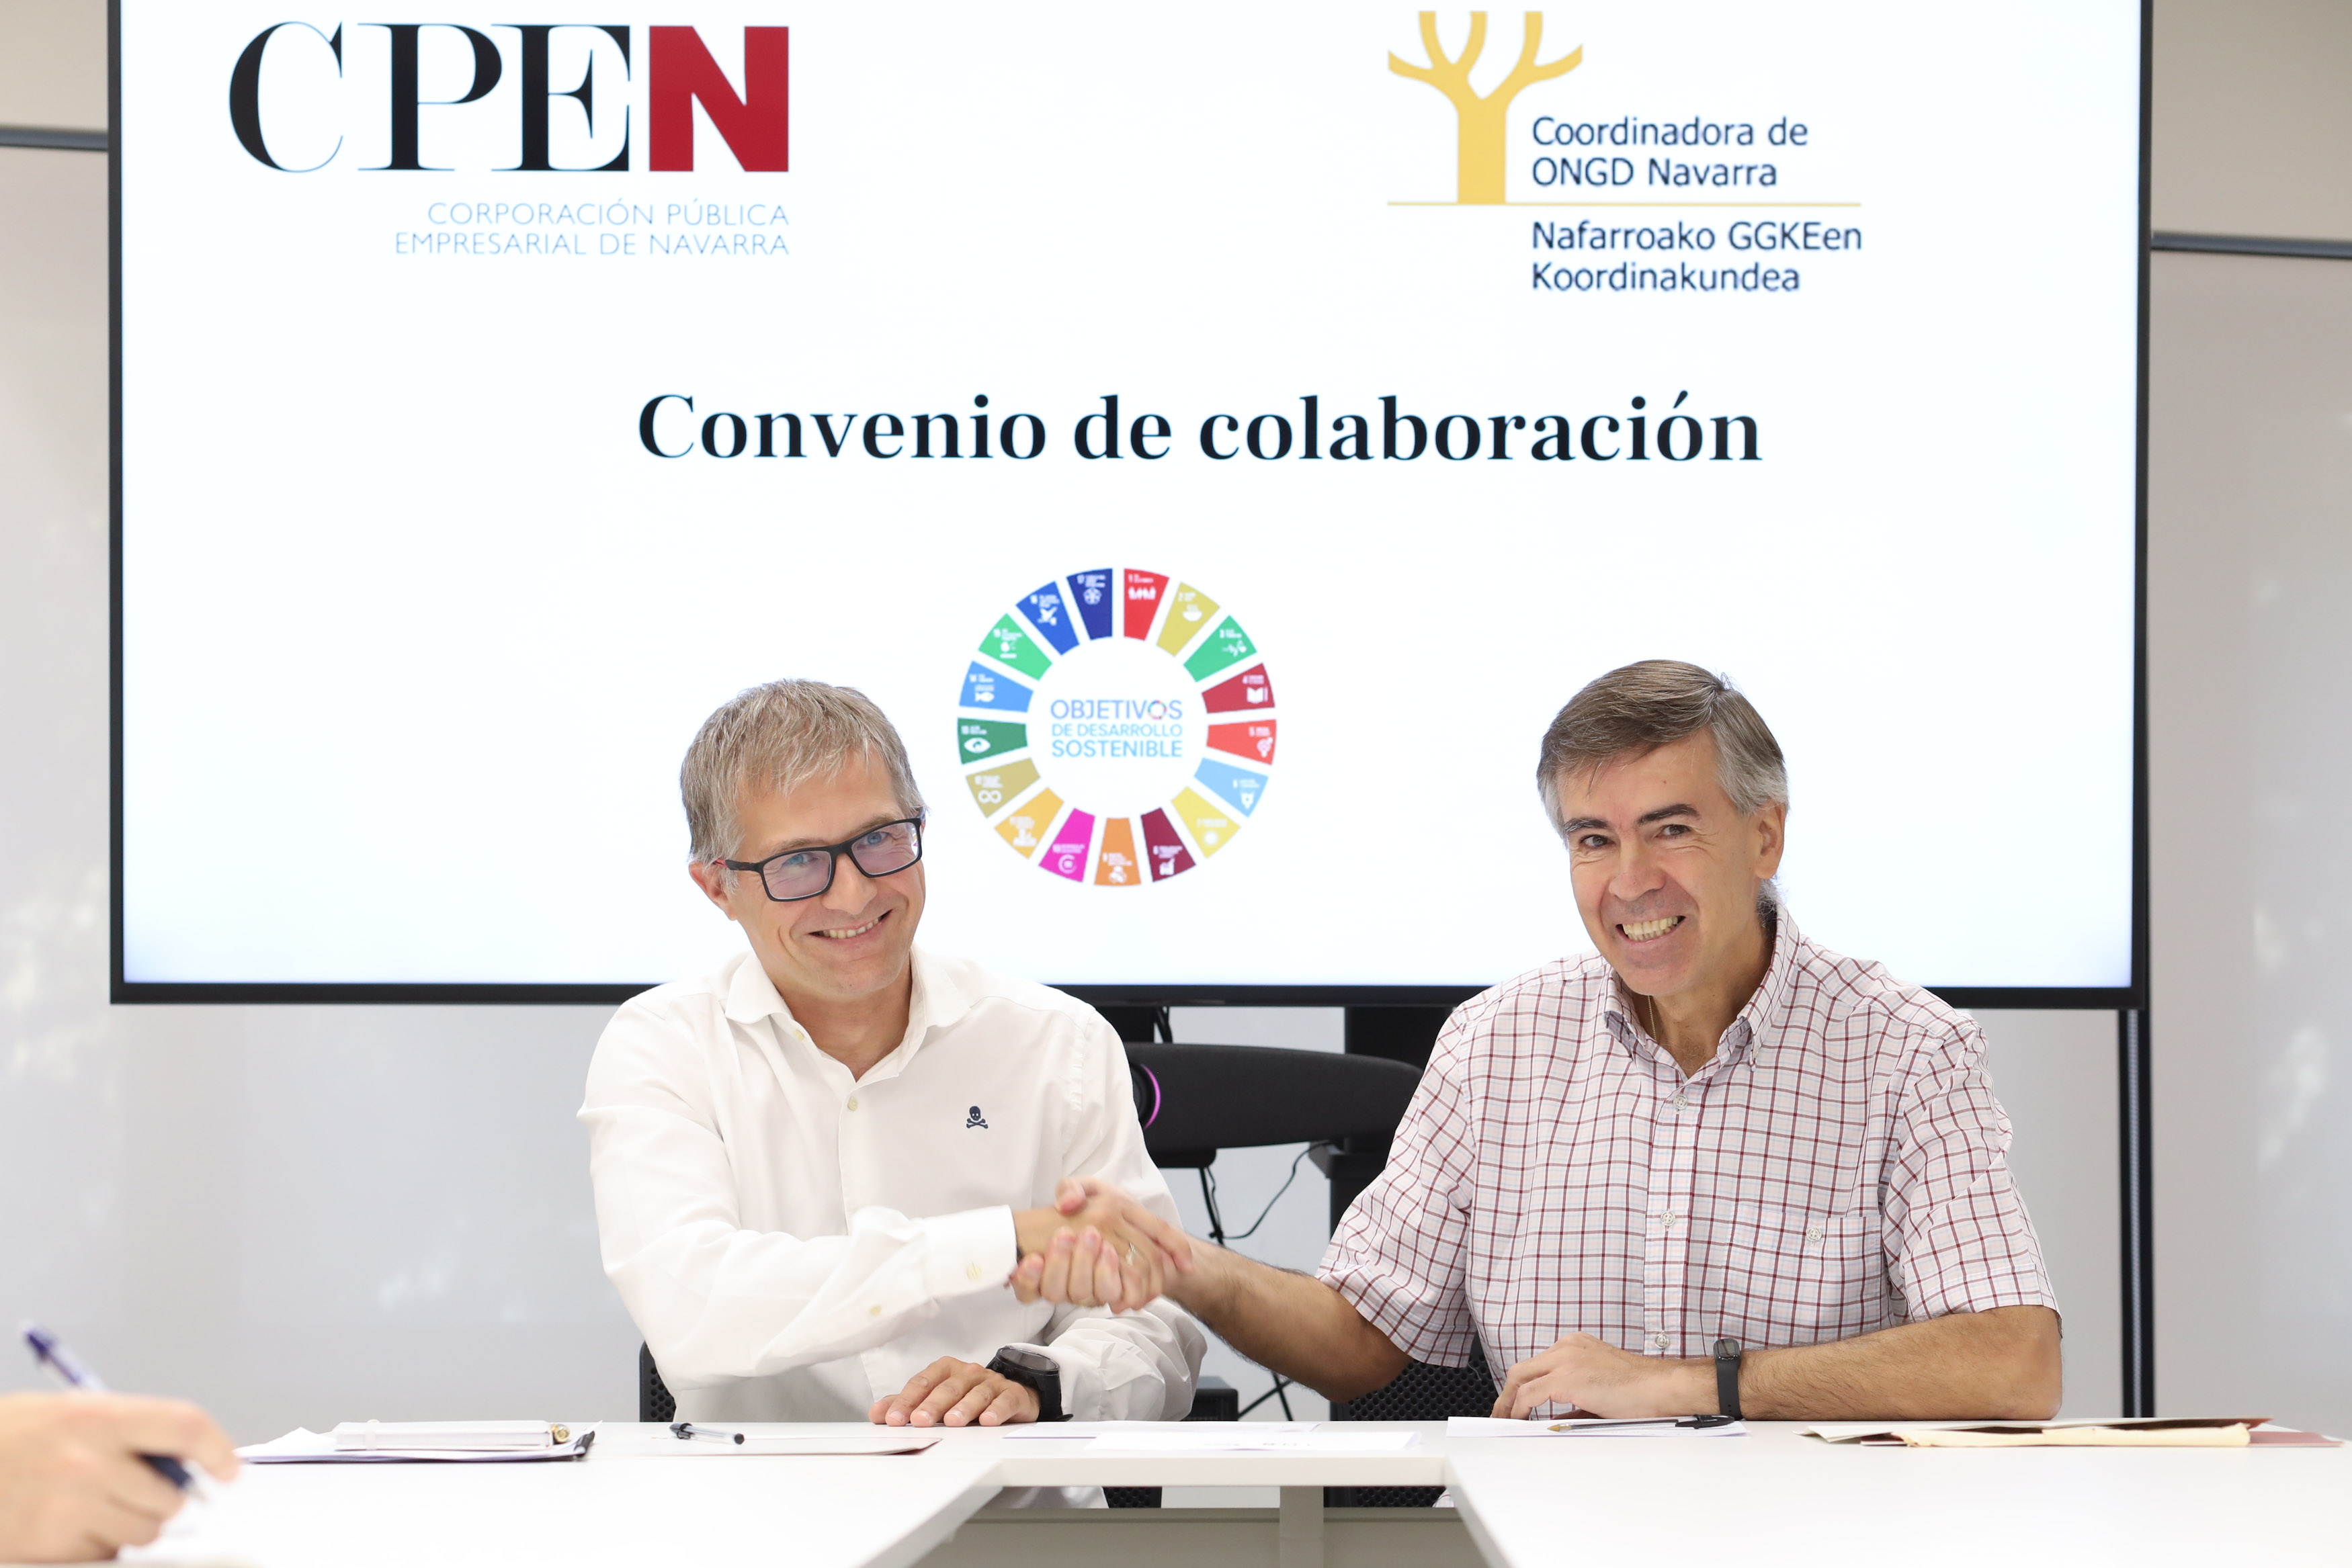 El director general de CPEN, Francisco Fernández Nistal, y el presidente de la CONGDN, Juan María Erice, tras la firma del convenio